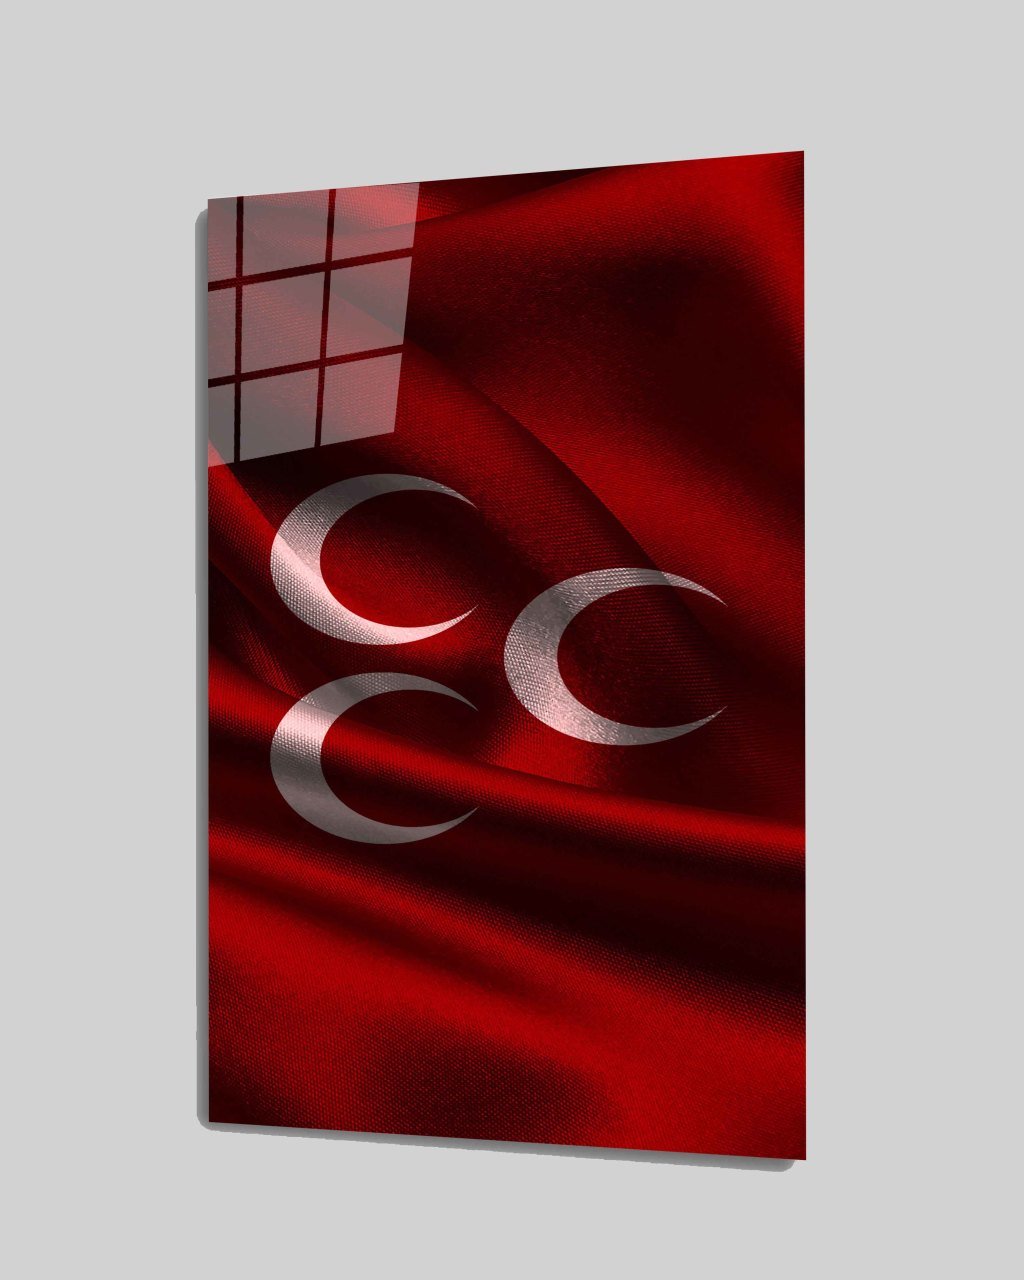 İdealizbiz Türklük  3Hilal Cam Tablo  4mm Dayanıklı Temperli Cam